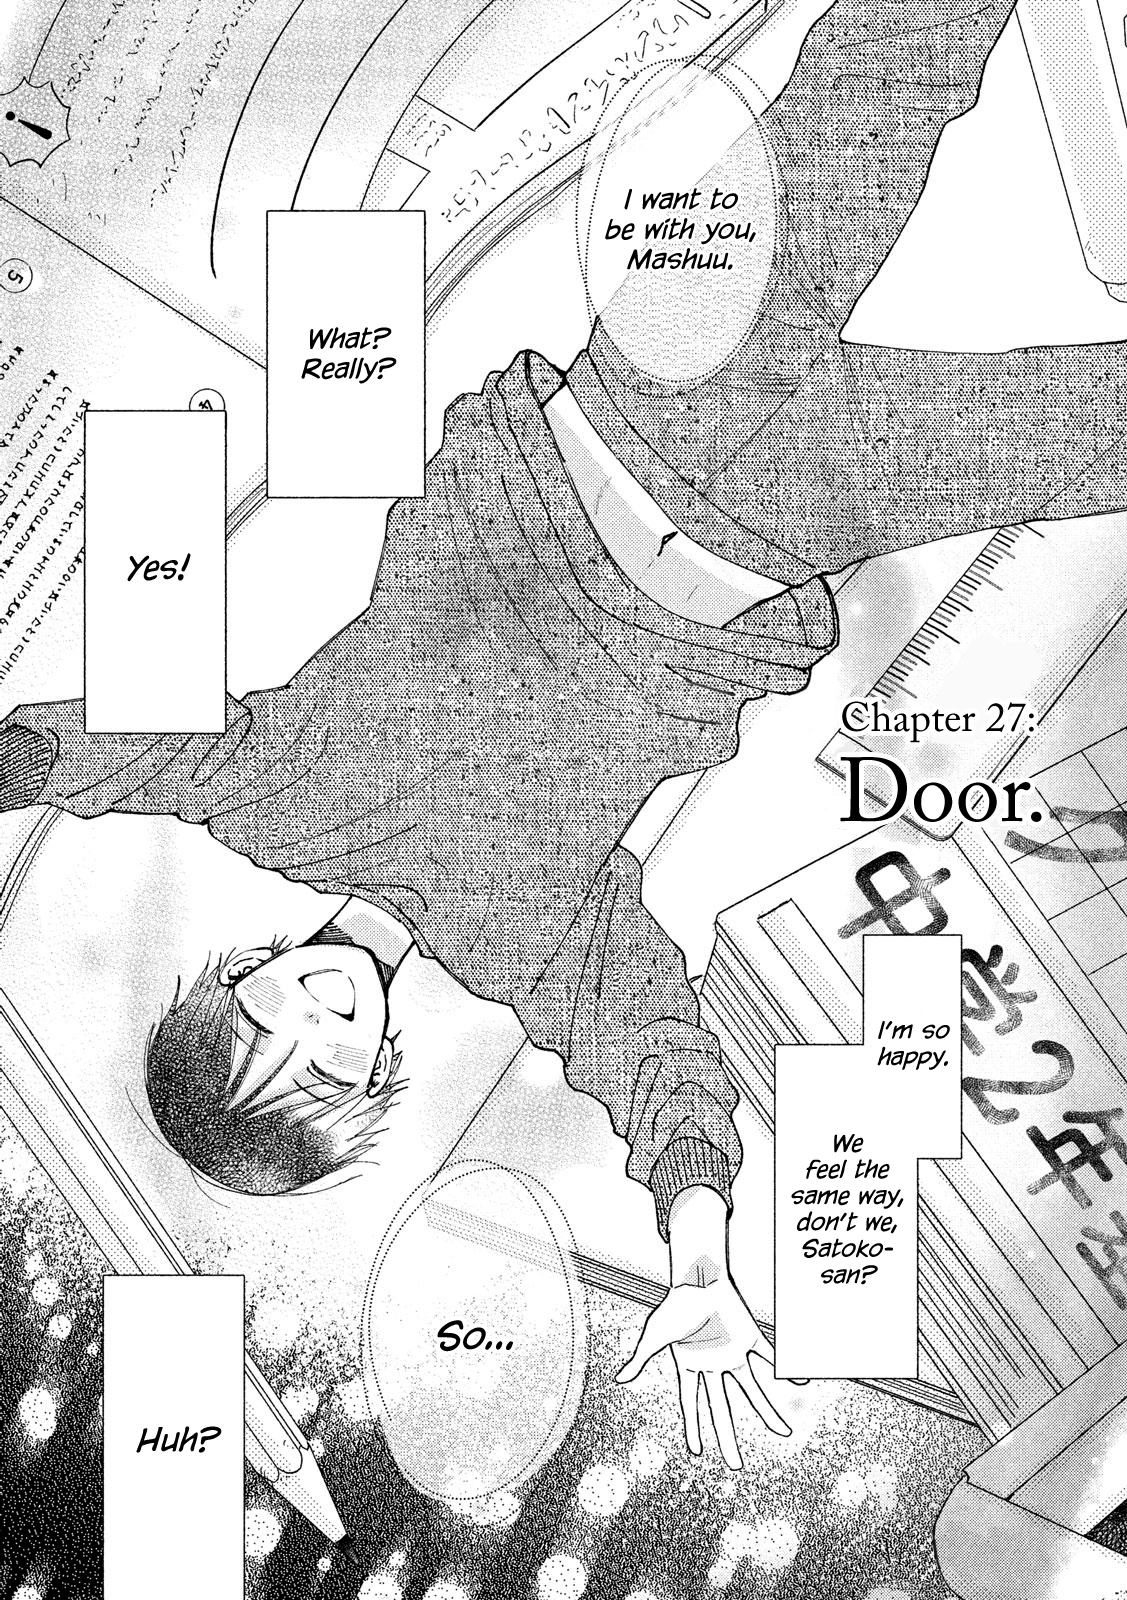 Watashi no Shounen (TAKANO Hitomi) Vol.6 Chapter 27: Door